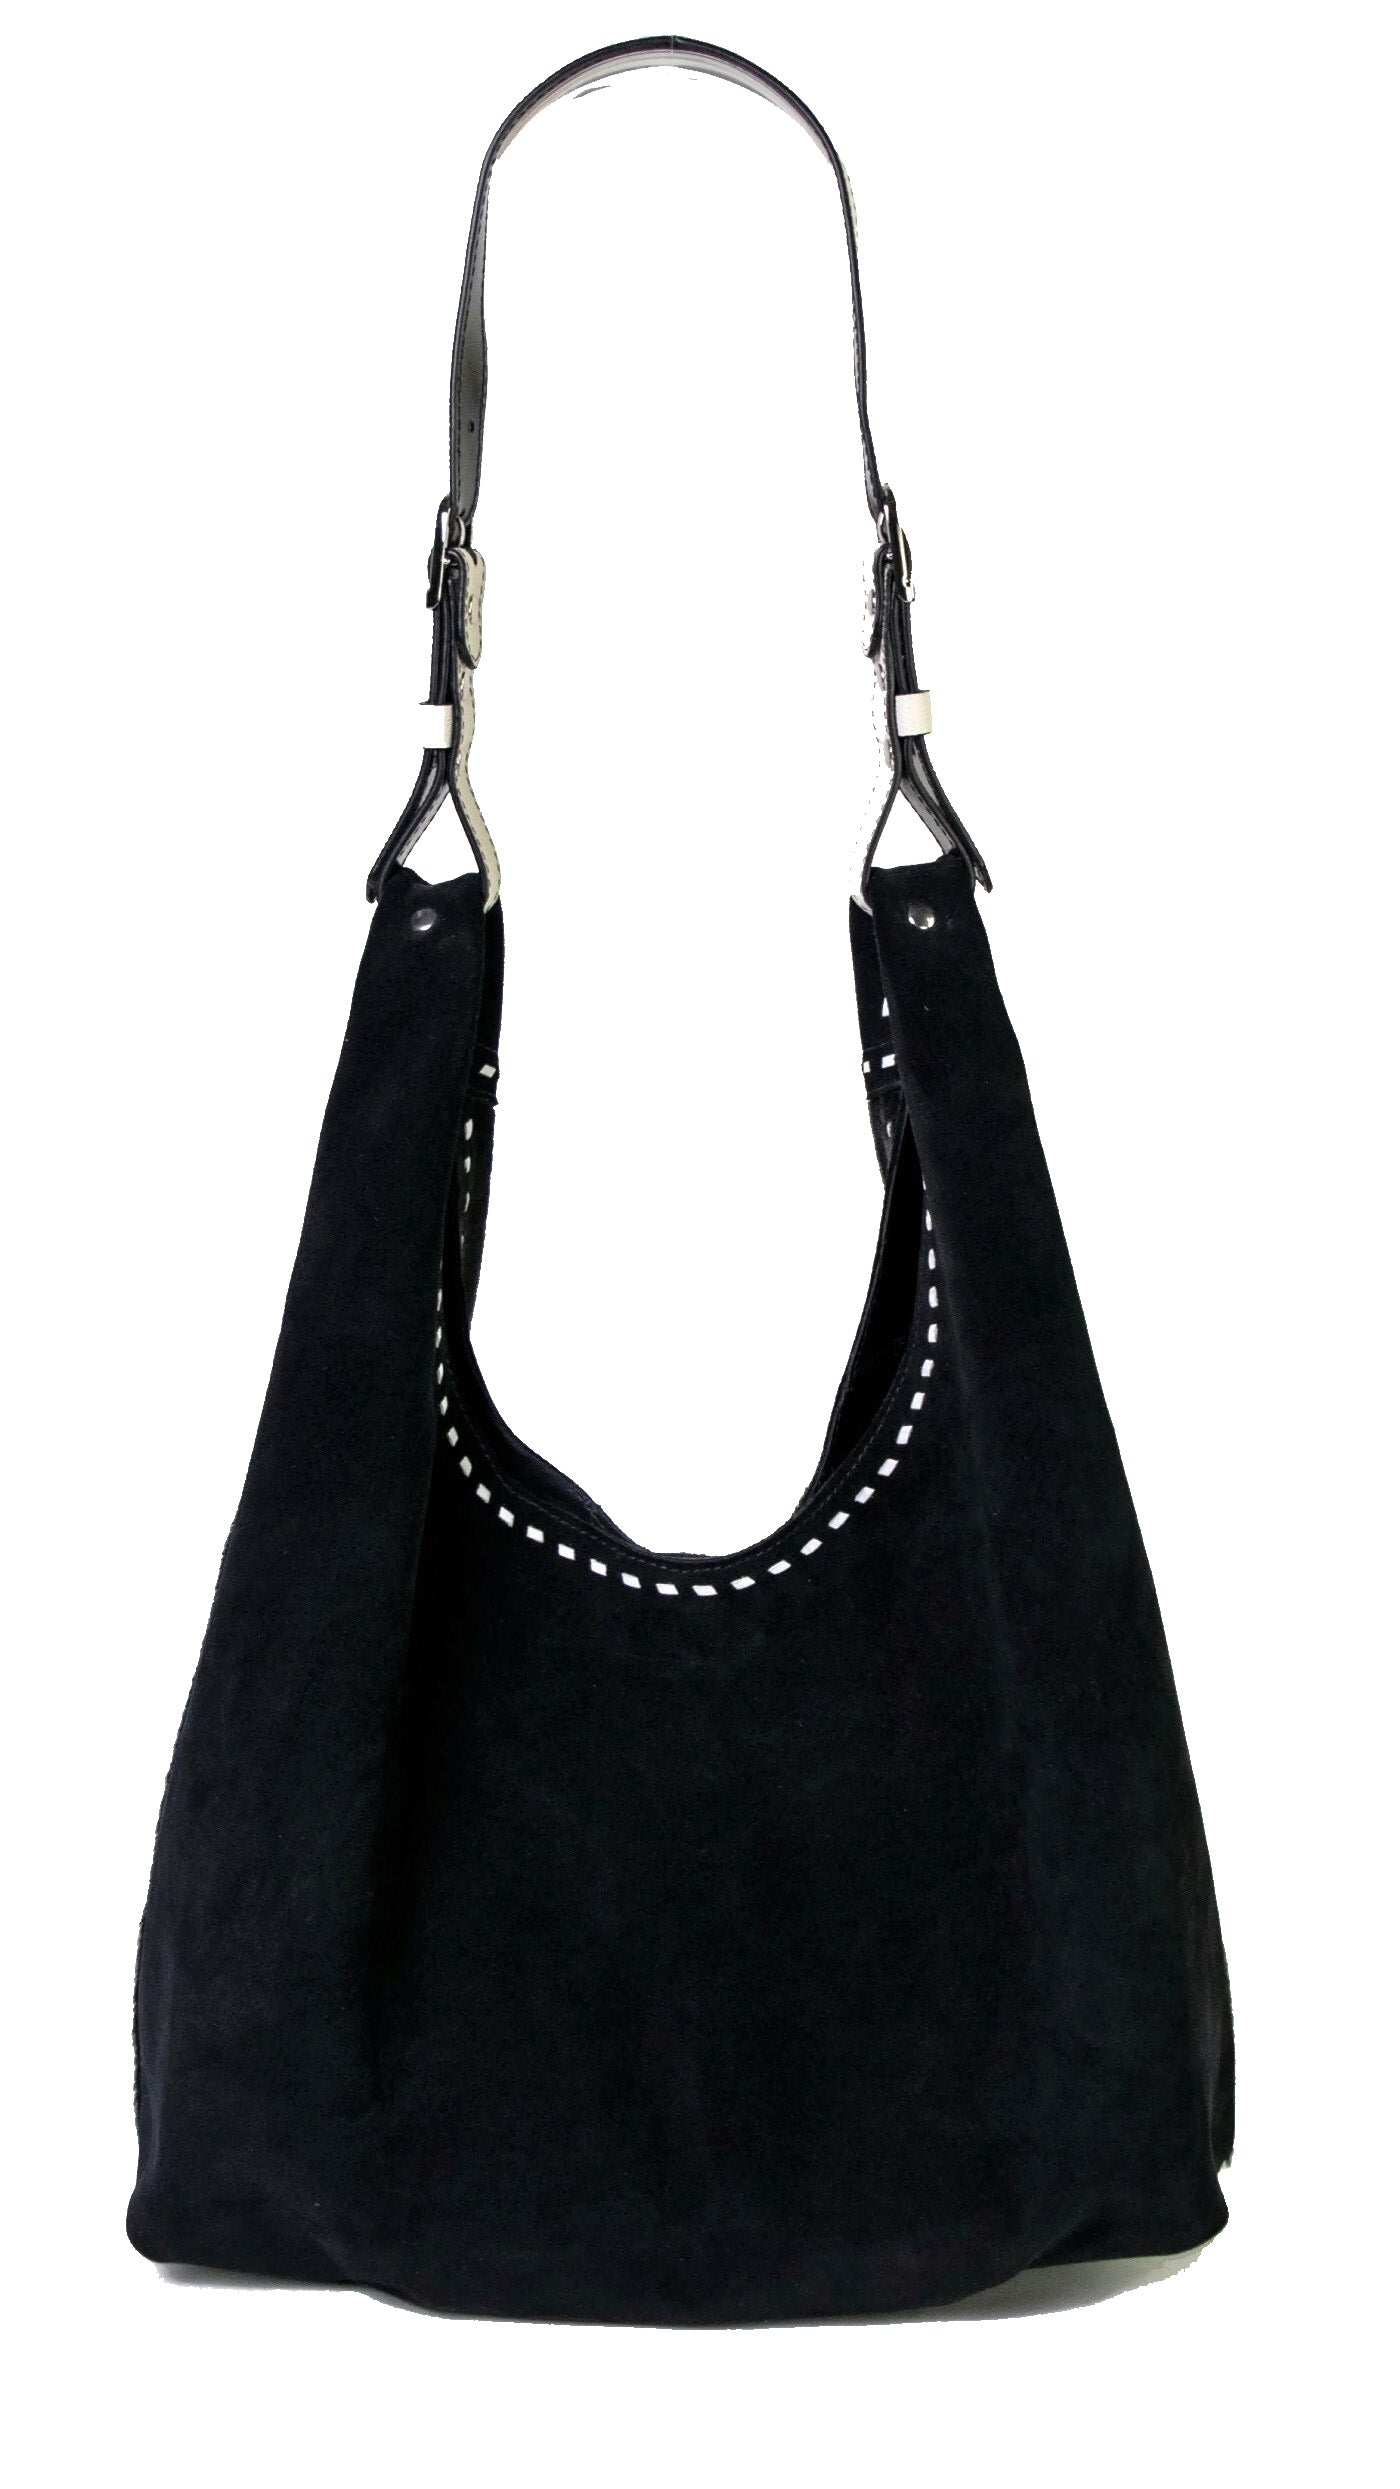 Park N/S Medium suede tote bag in black - The Row | Mytheresa